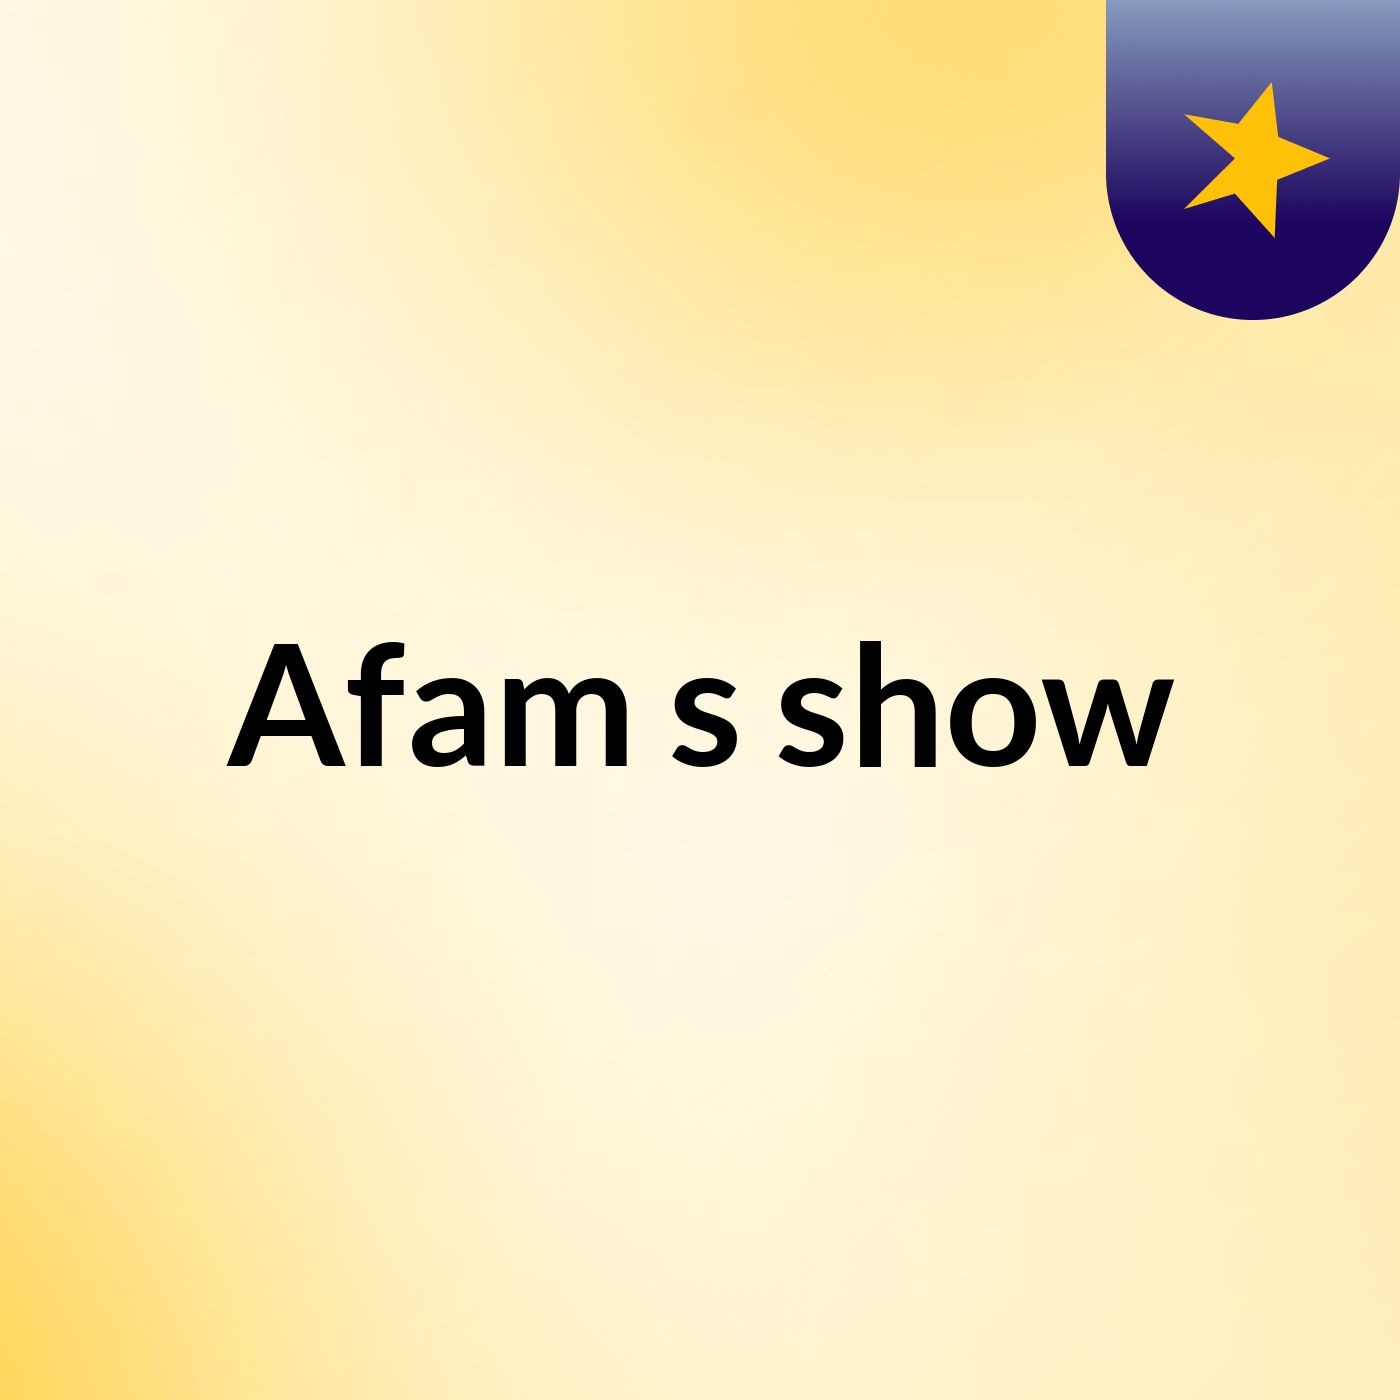 Afam's show